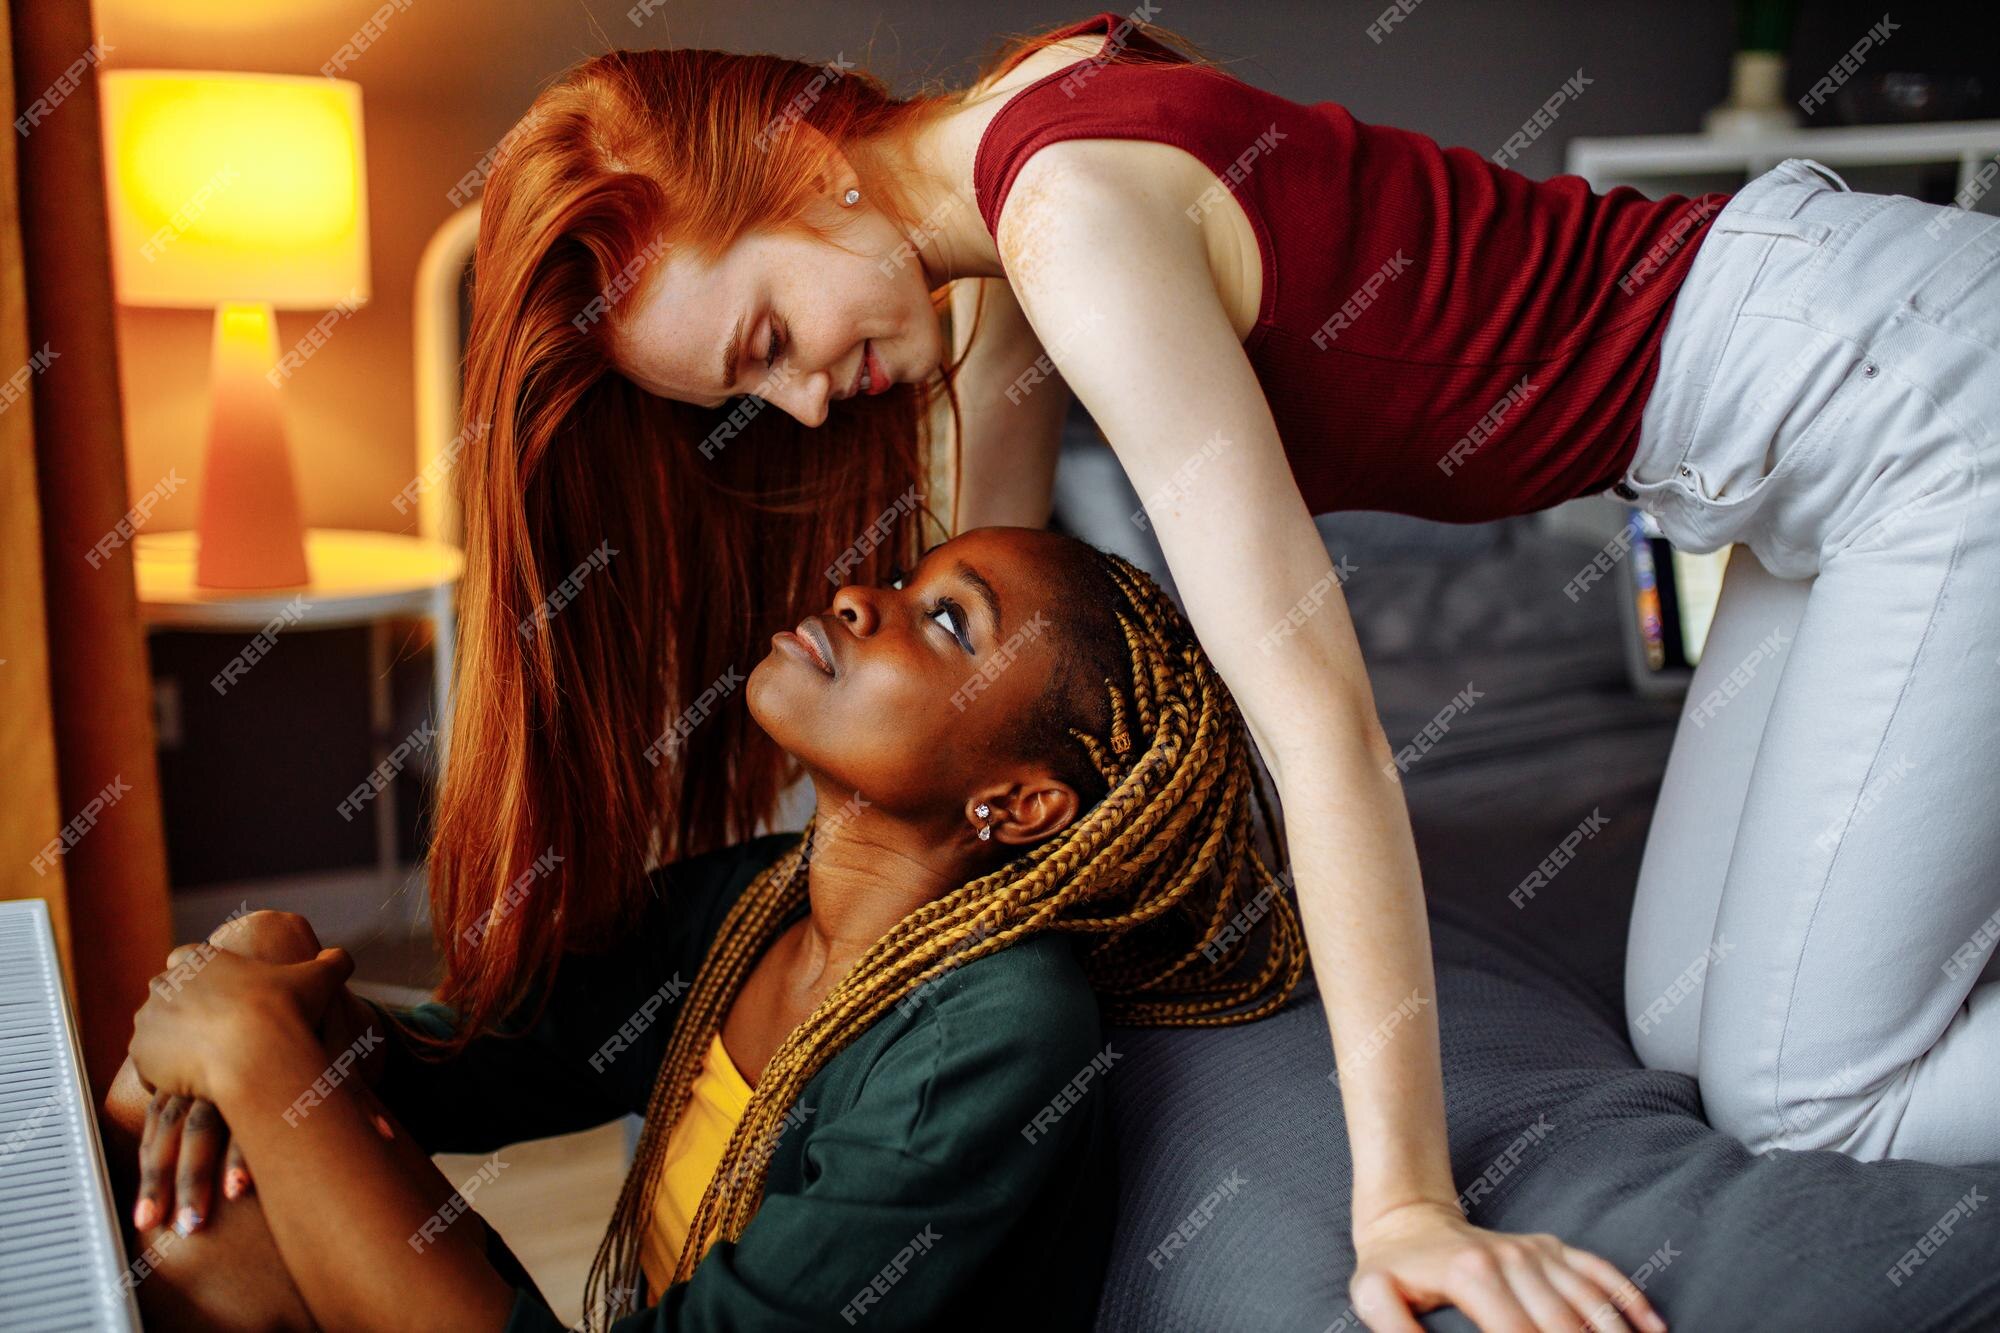 El otro día Amplificar veredicto Alegres mujeres lesbianas afro y europeas en casa en la cama | Foto Premium